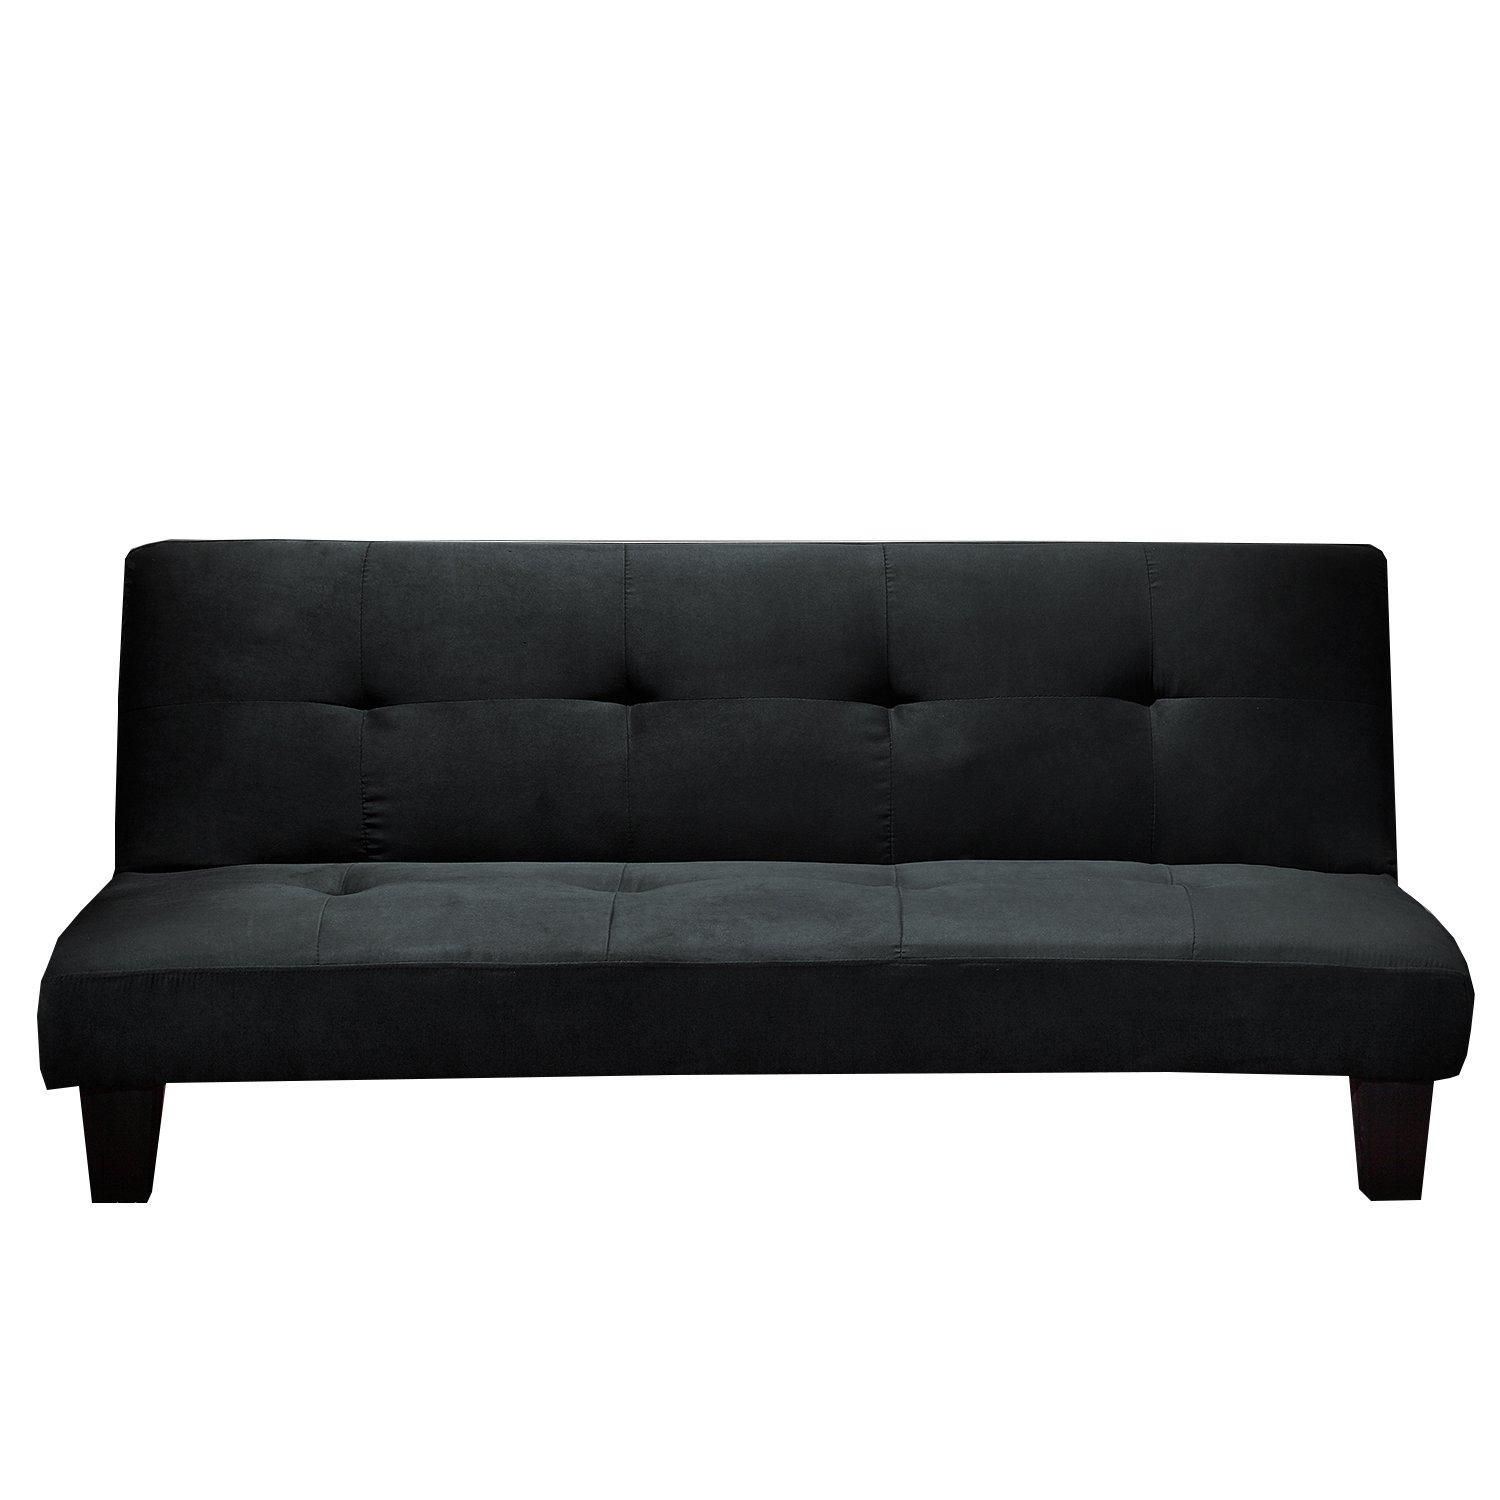 Living Room: Ava Velvet Tufted Sleeper Sofa | Contemporary Futon In Ava Tufted Sleeper Sofas (View 6 of 20)